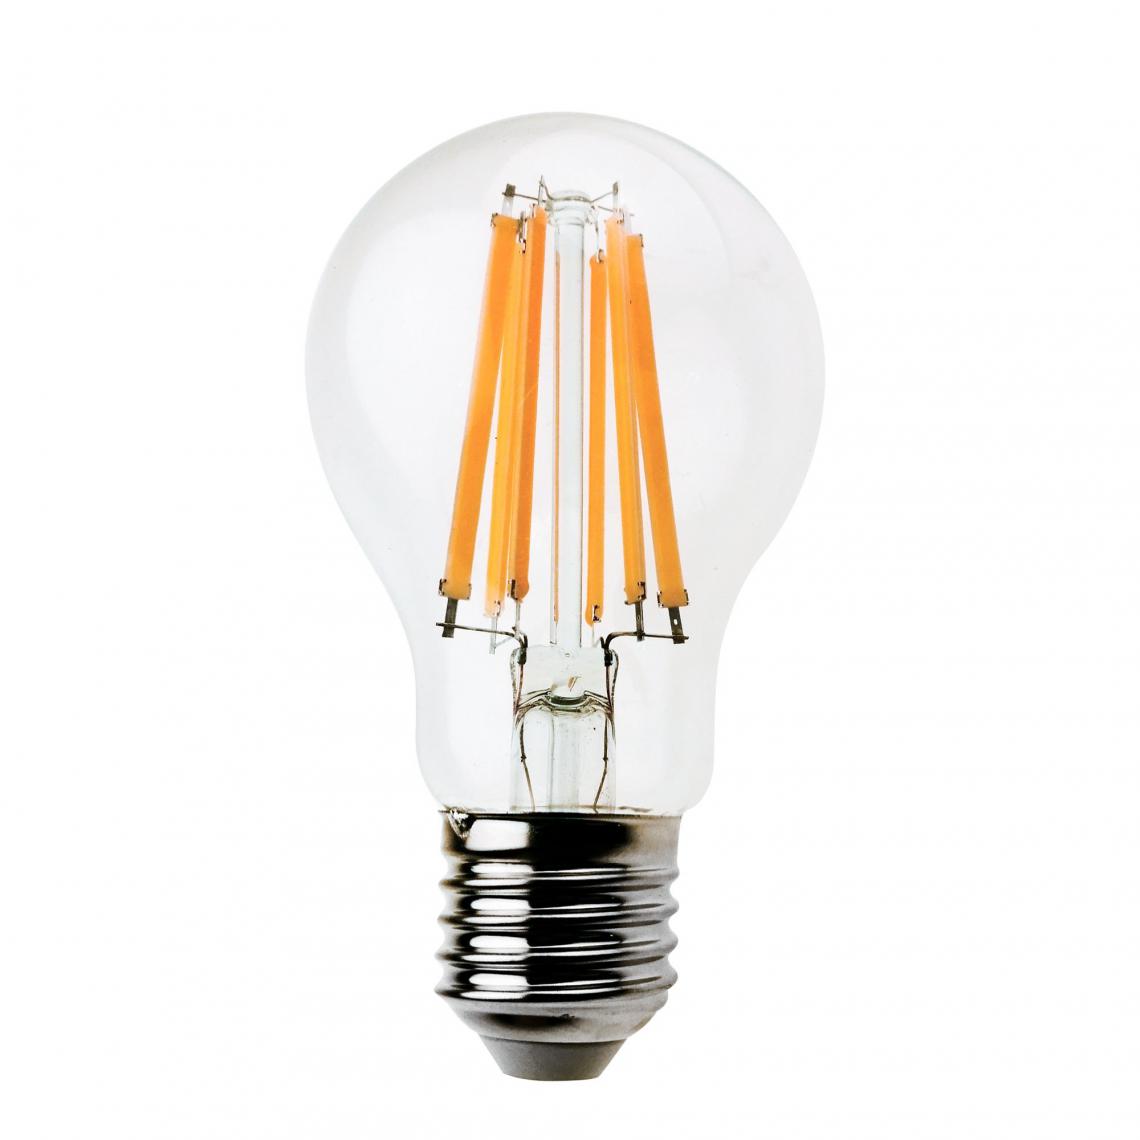 Velamp - Ampoule LED SMD, standard A60, 15W / 1520lm, culot E27, 3000K - Ampoules LED